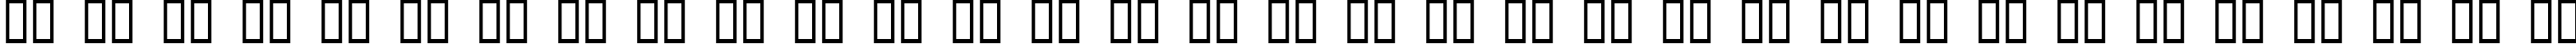 Пример написания русского алфавита шрифтом Digital Readout Thick Upright